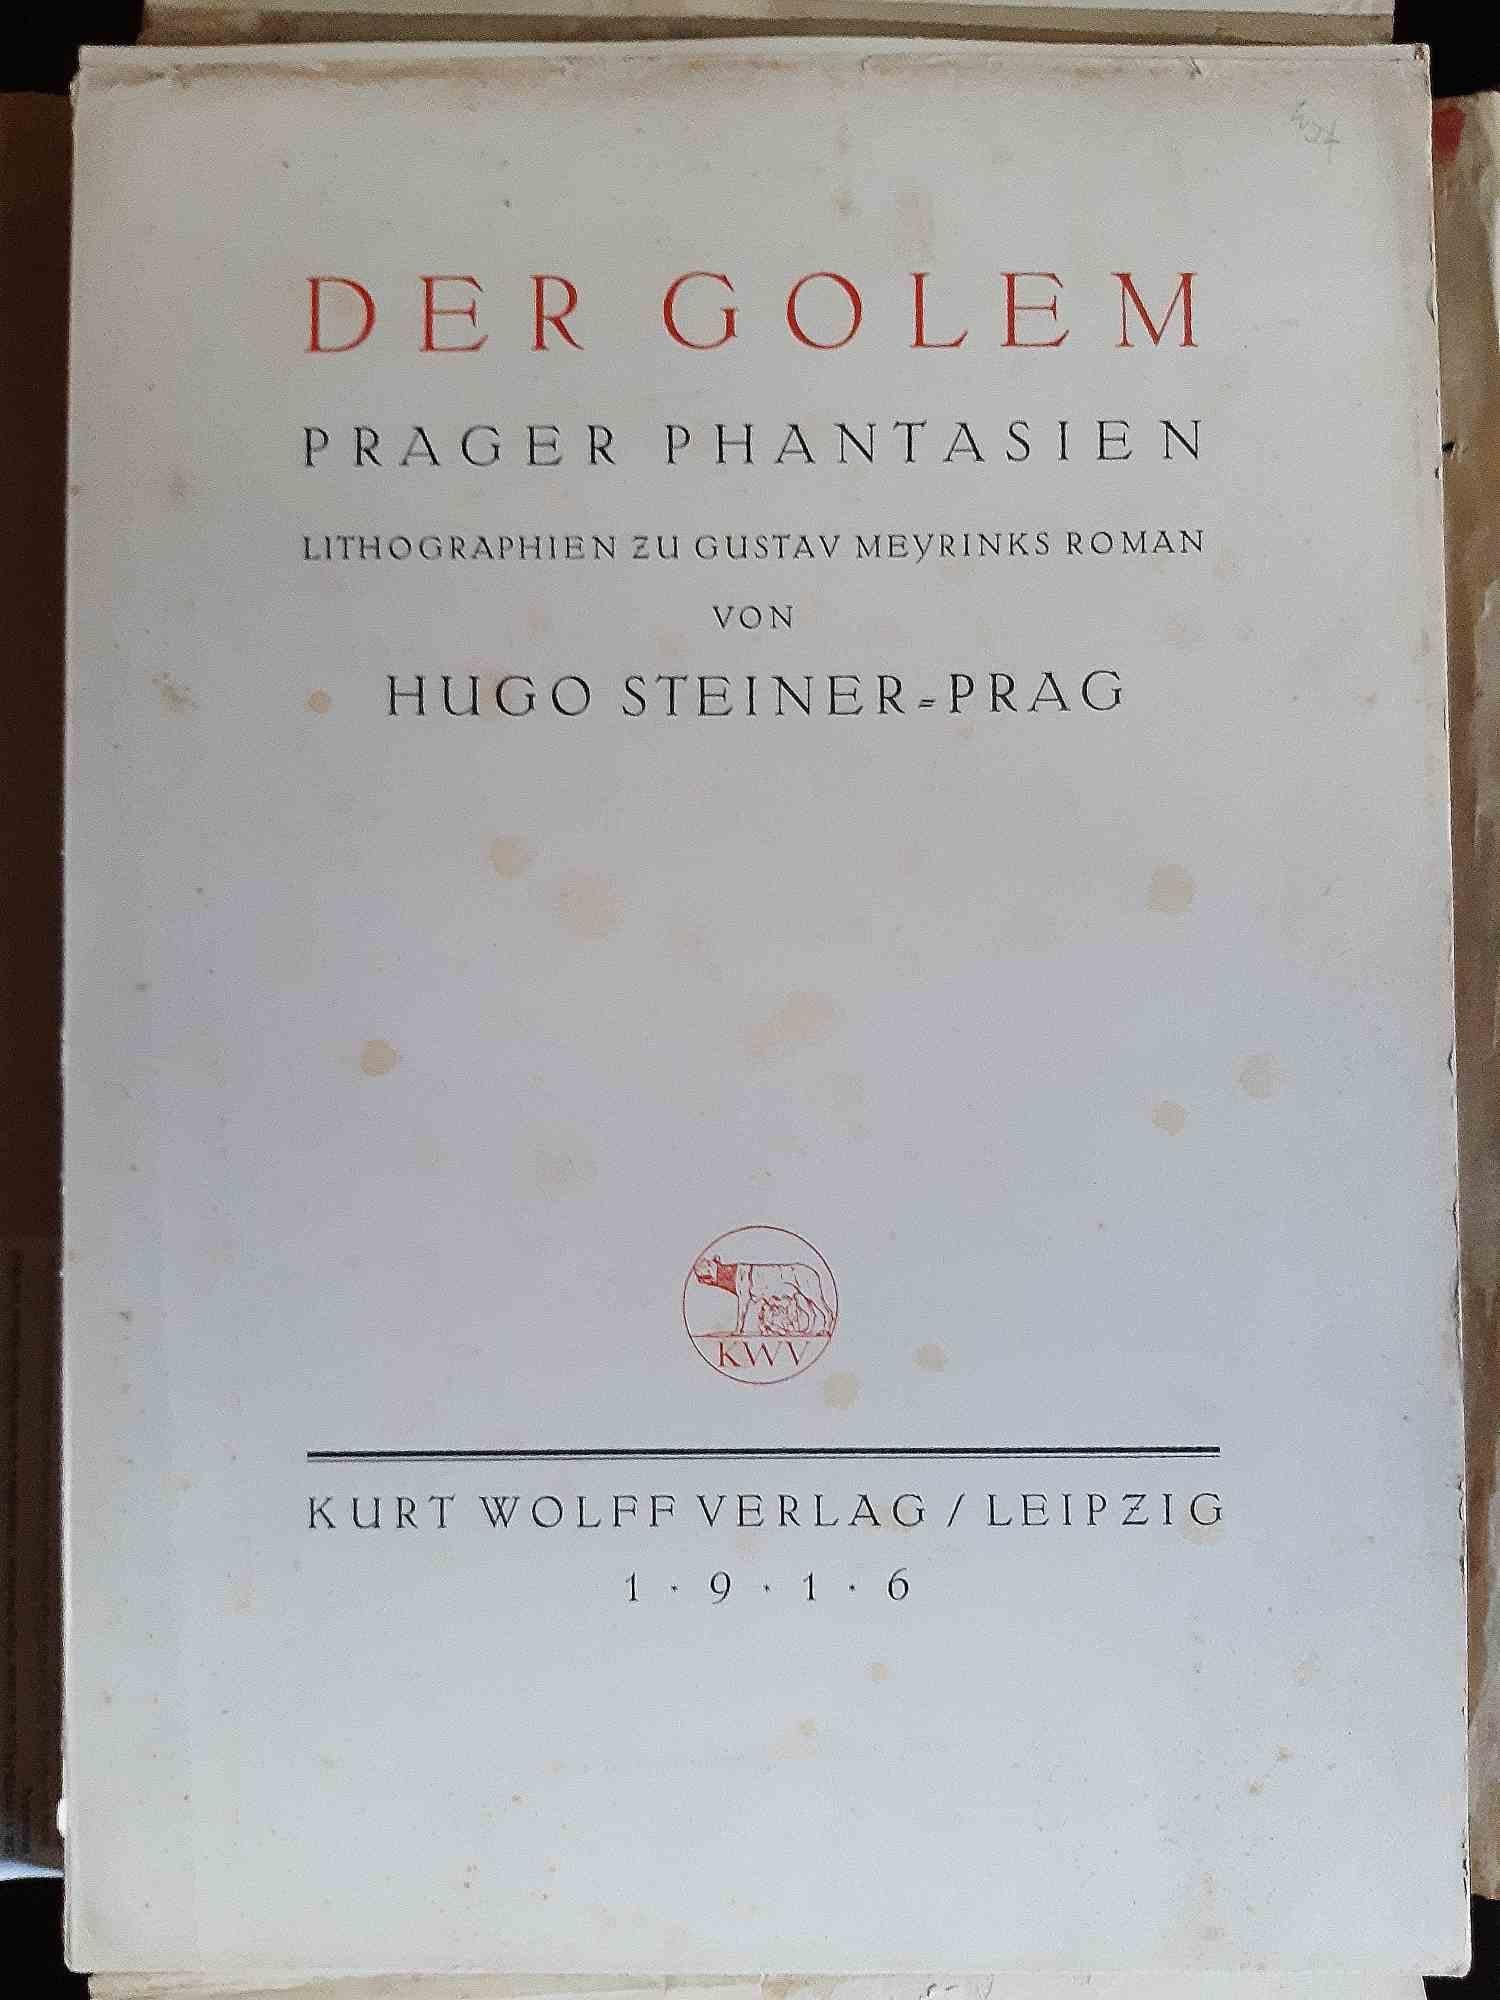 Der Golem. Prager Phantasien is an original modern rare book written by Gustav Meyrink, pseudonym of Gustav Meyer (Wien, January 19, 1868 - Starnberg, December 4, 1932) and illustrated by Hugo Steiner-Prag (Prague, 1880 - New York, 1945) in